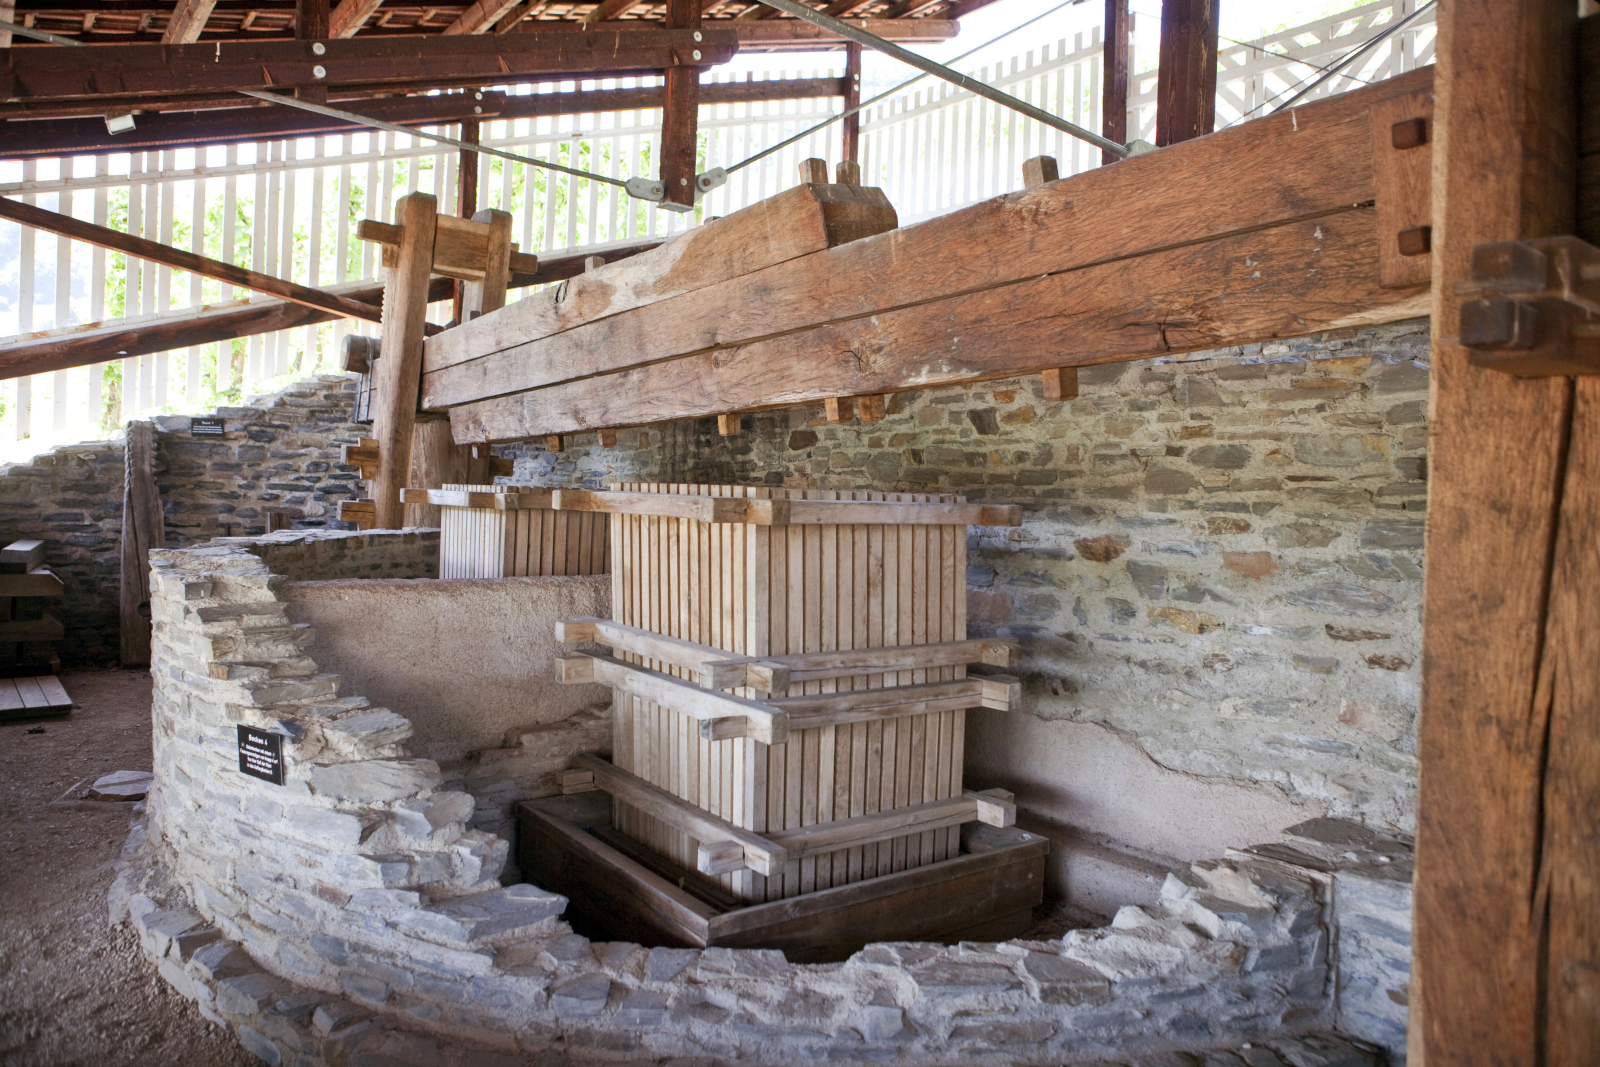 Roman wine press in Piesport